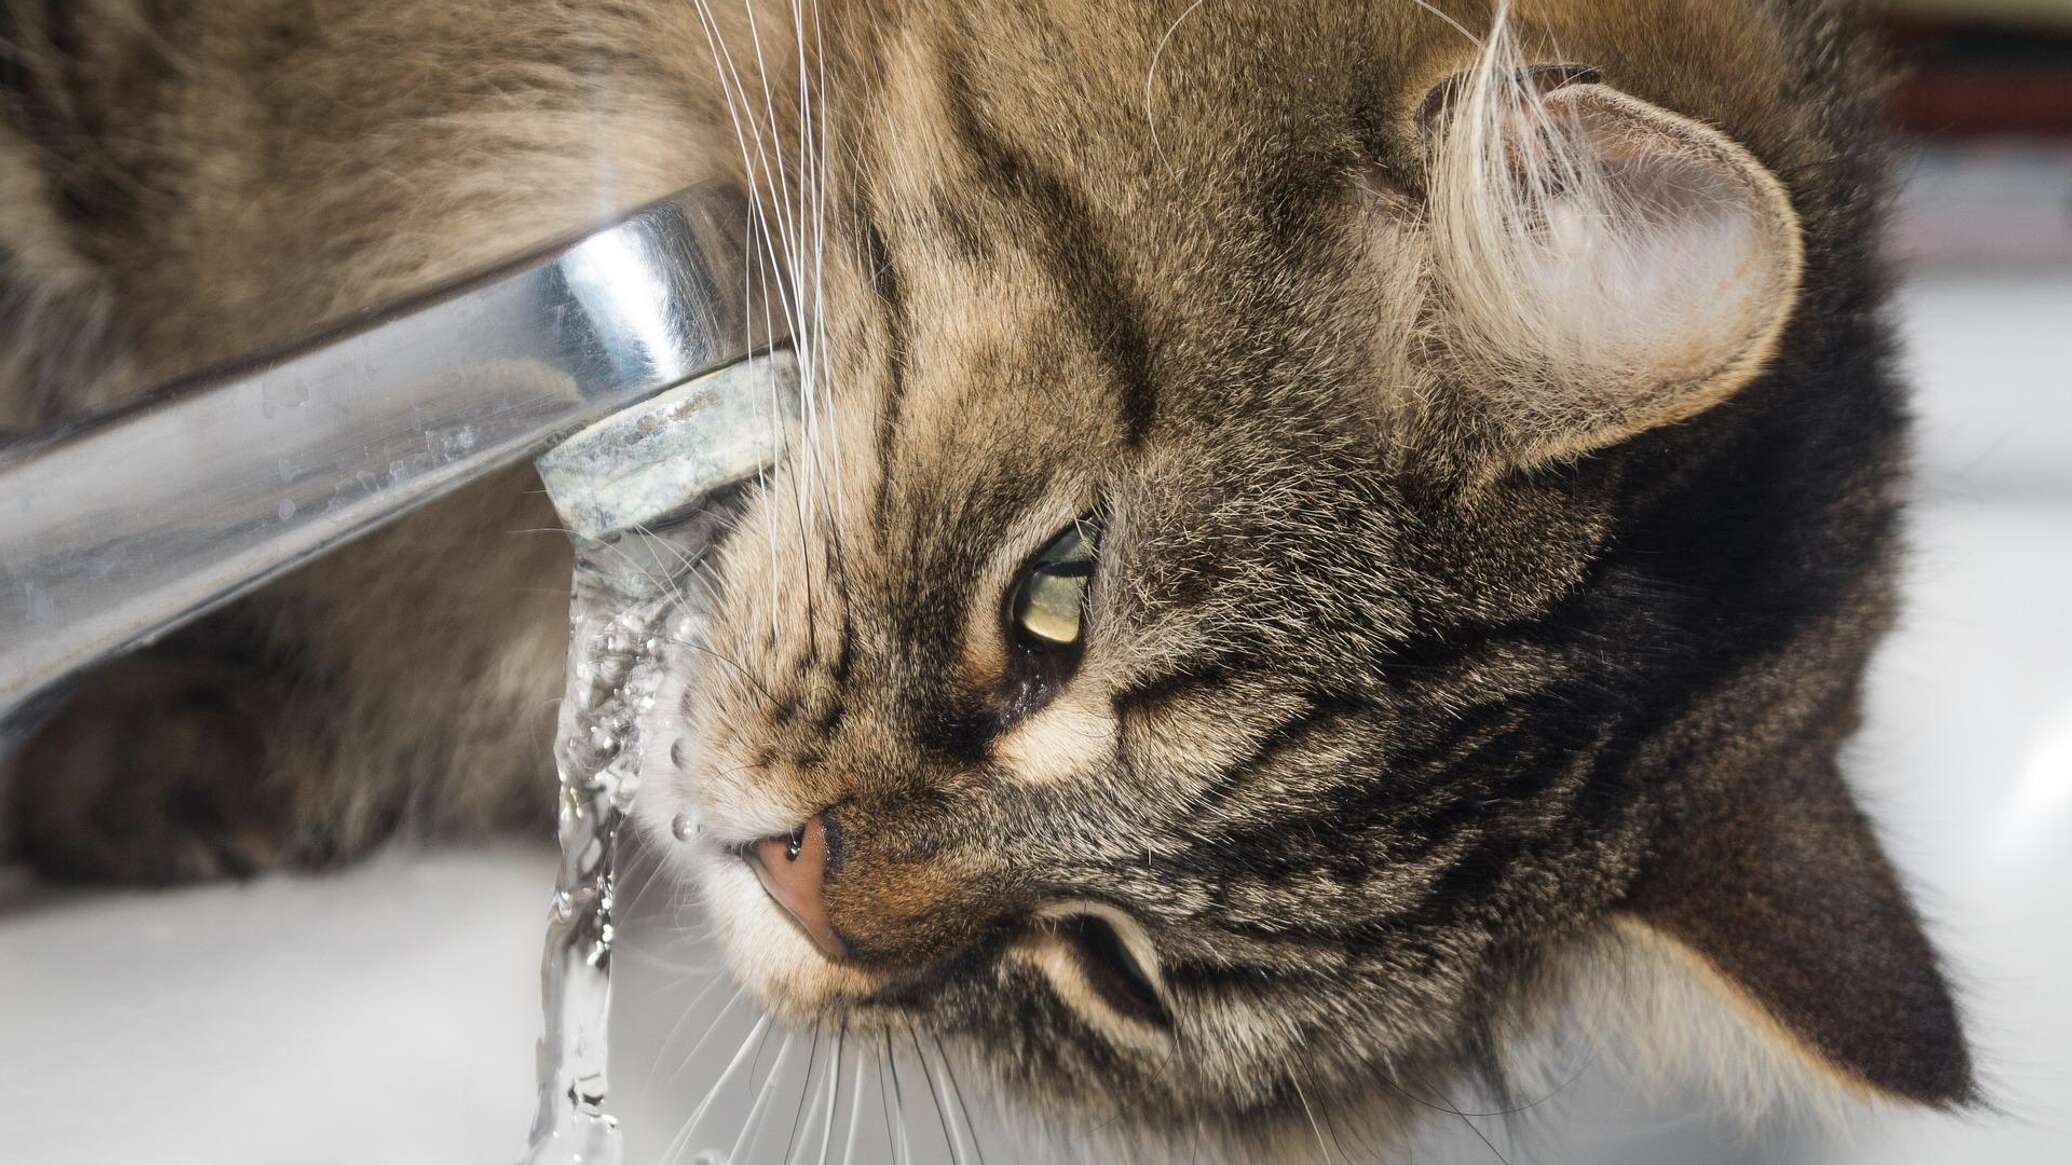 Кот пьет воду из под крана. Кошка пьет из под крана. Кошка пьет на улице. Кот пьет воду фото. Горячая вода опасна